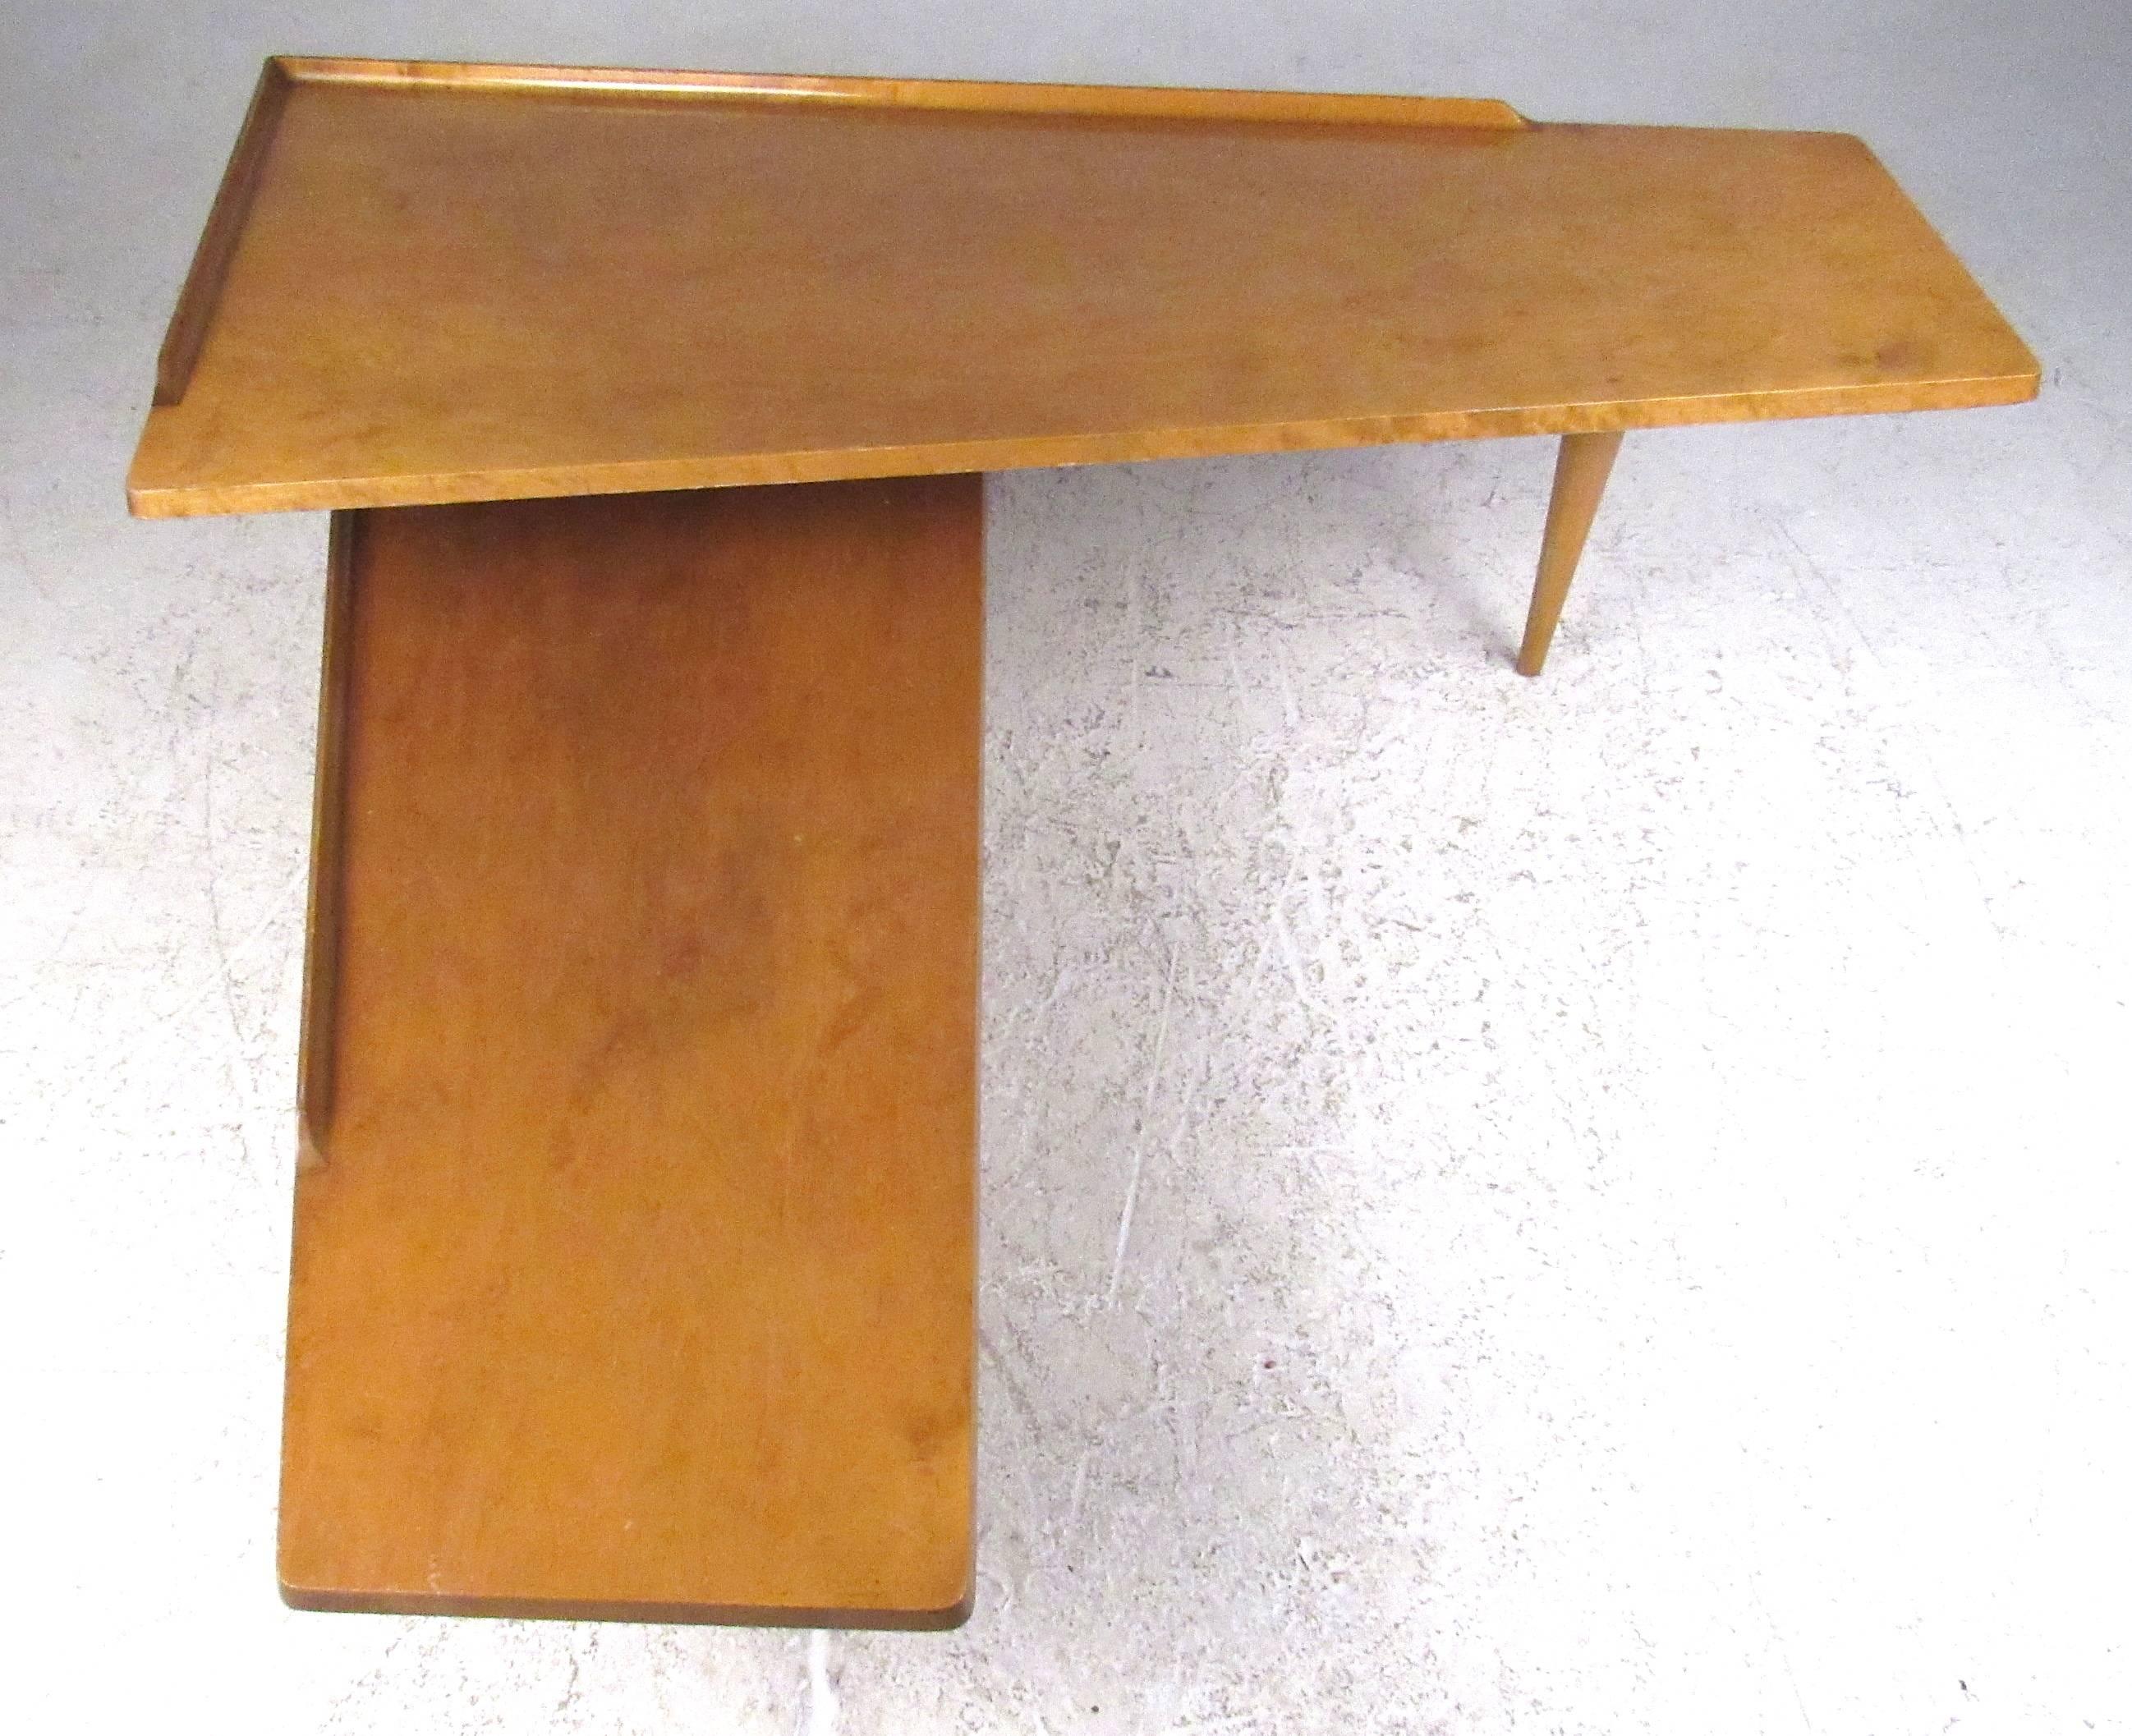 Table basse pivotante unique en son genre, dotée de deux hauteurs de table 11